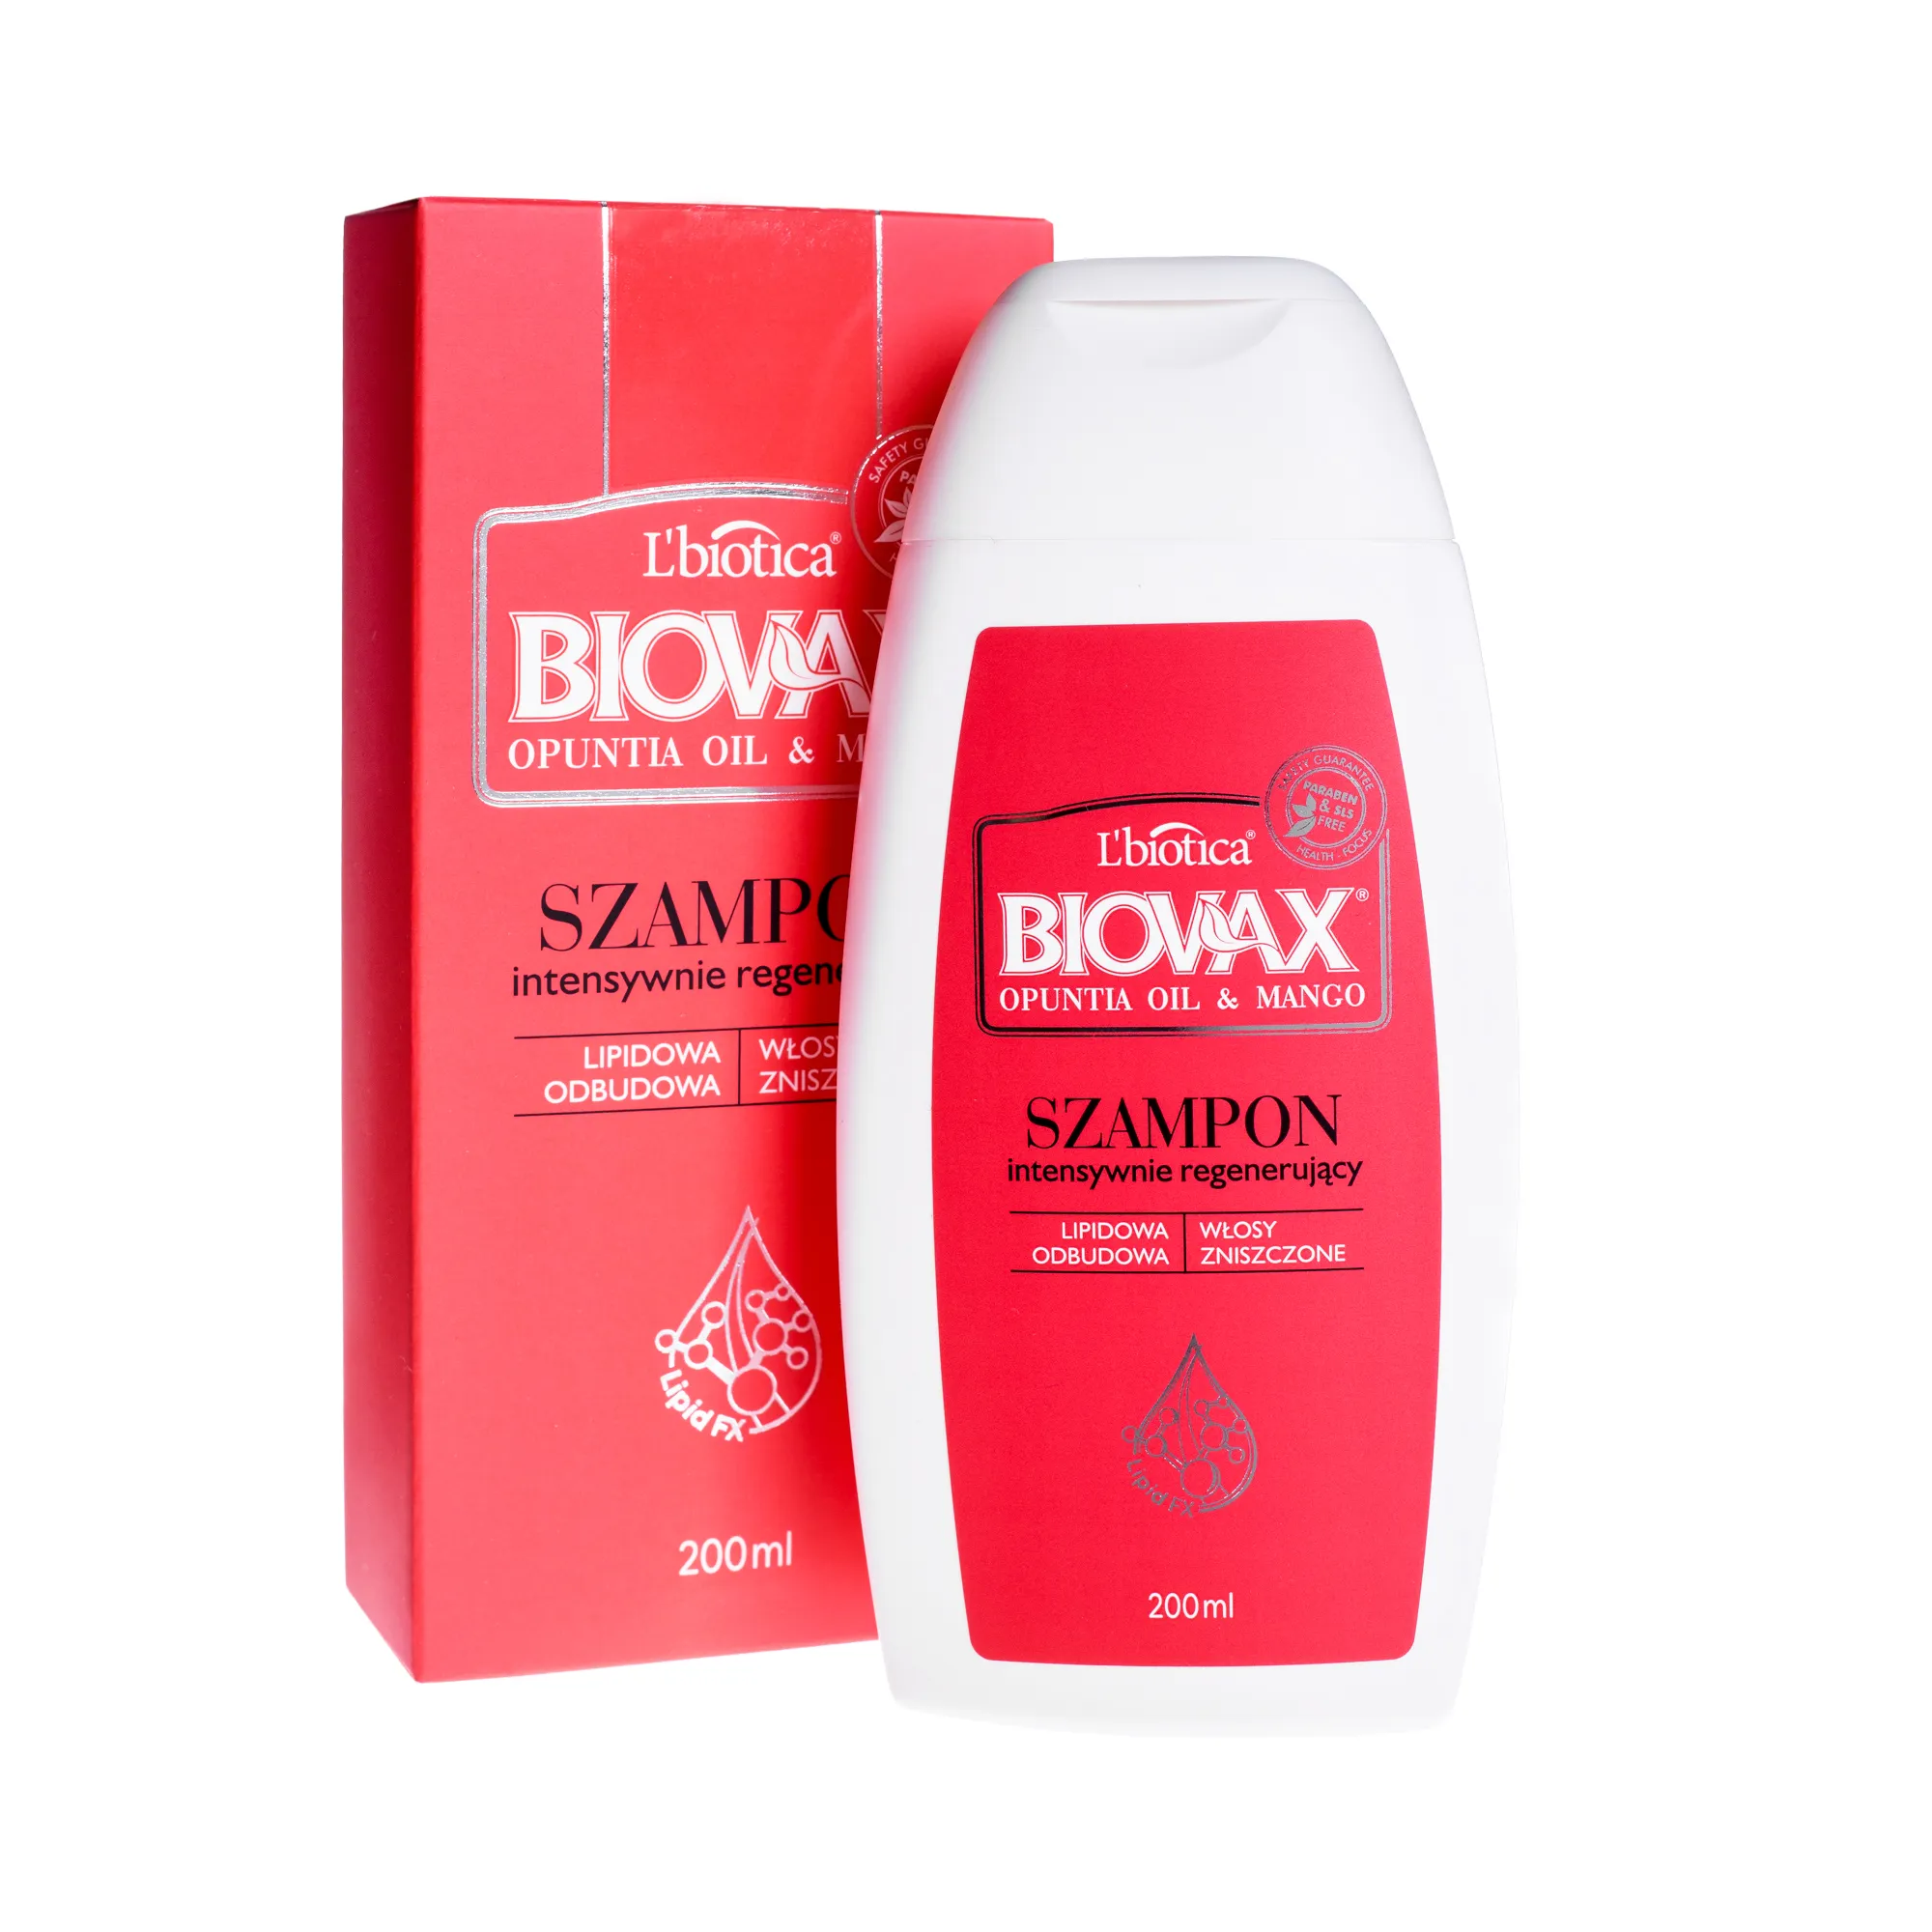 L'biotica Biovax Opuntia Oil&Mango, szampon intensywnie regenerujący do włosów zniszczonych, 200 ml